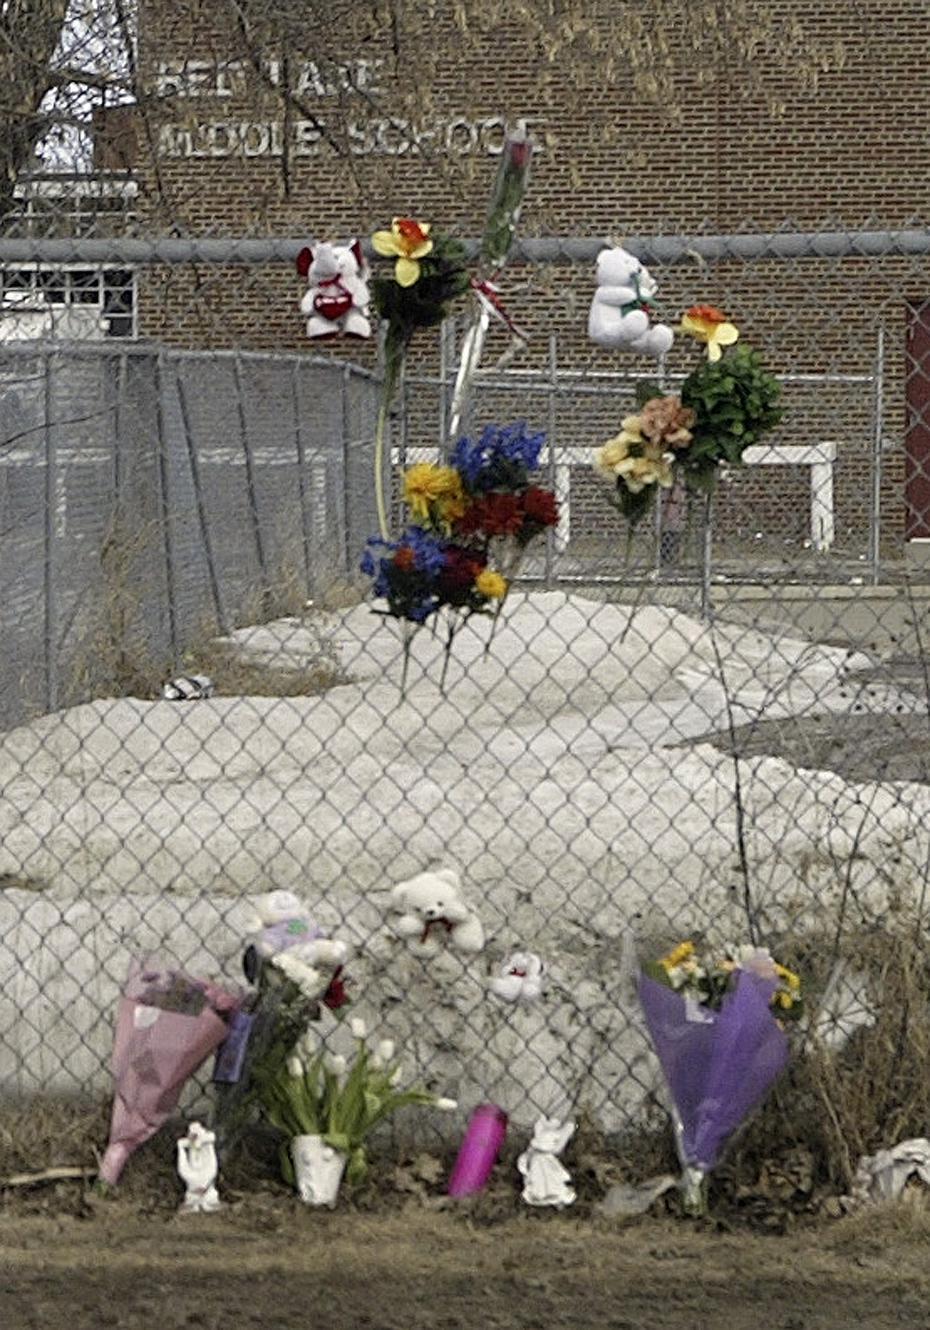 Flores adornan una valla a las afueras del edificio de la escuela Red Lake, en Minnesota. El atacante también mató a su abuelo y al compañero de su abuelo antes de ir a la escuela, donde estudiaba.